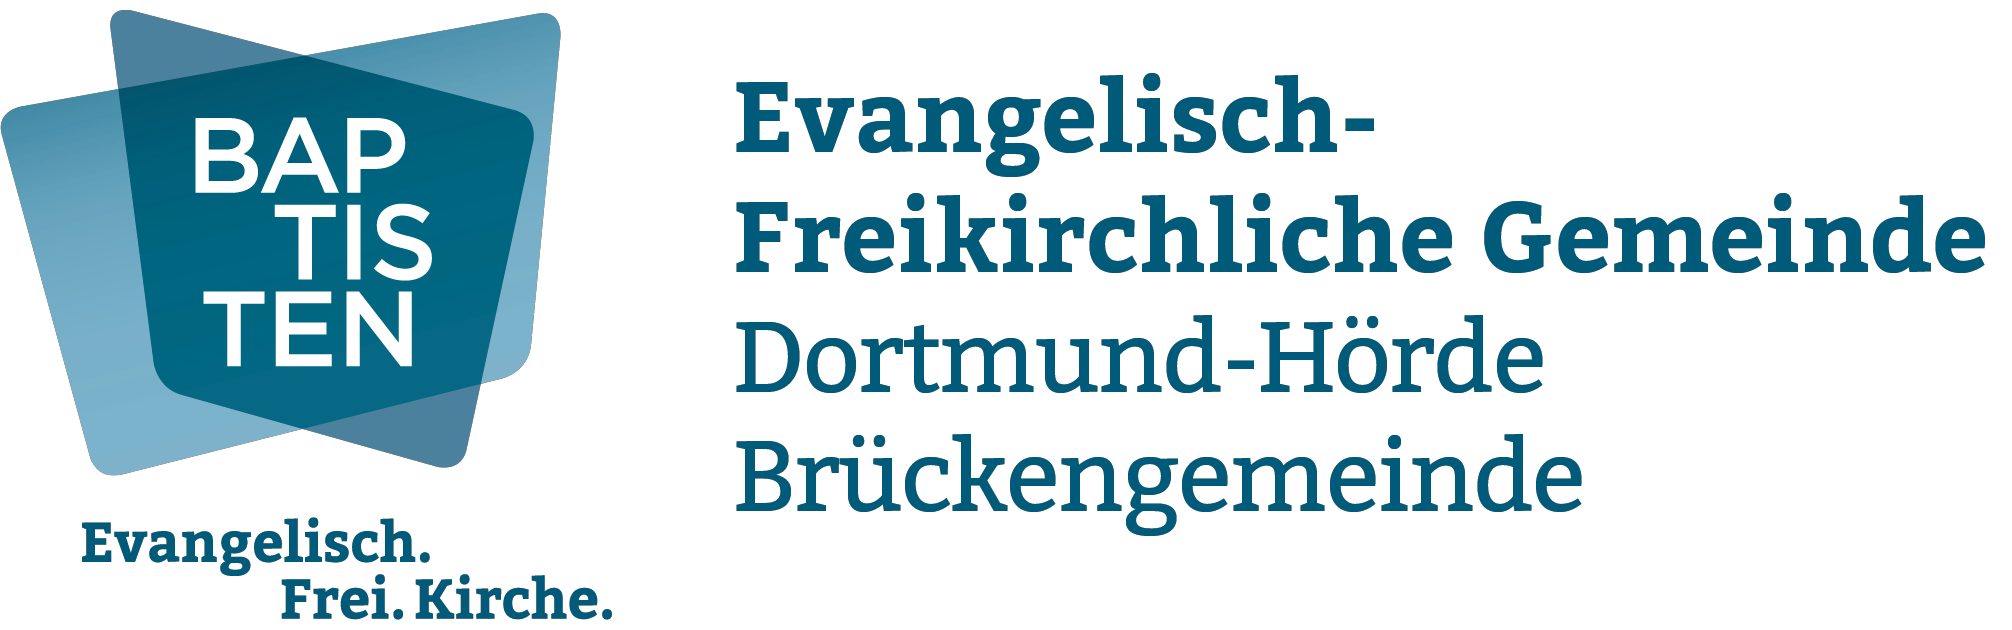 Evangelisch-Freikirchliche Gemeinde Dortmund-Hörde